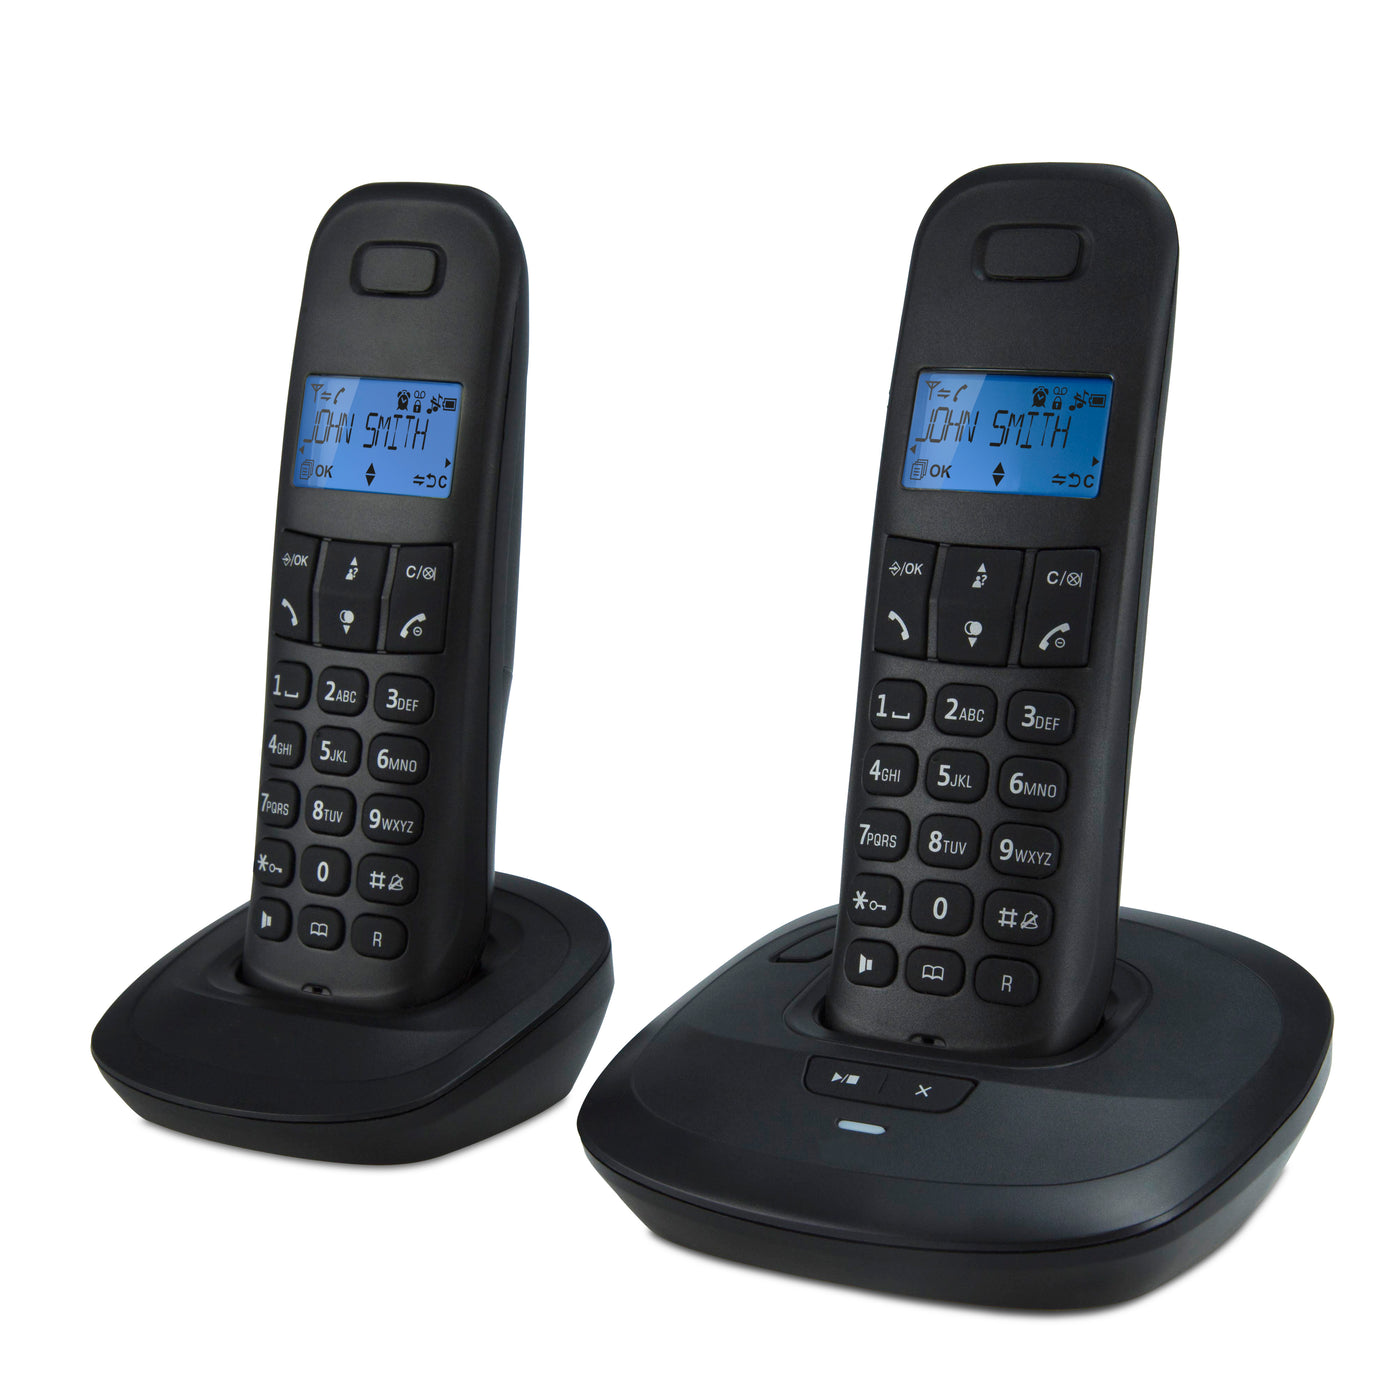 Teleline TEL-170ZT - DECT telefoon met antwoordapparaat en 2 handsets, zwart